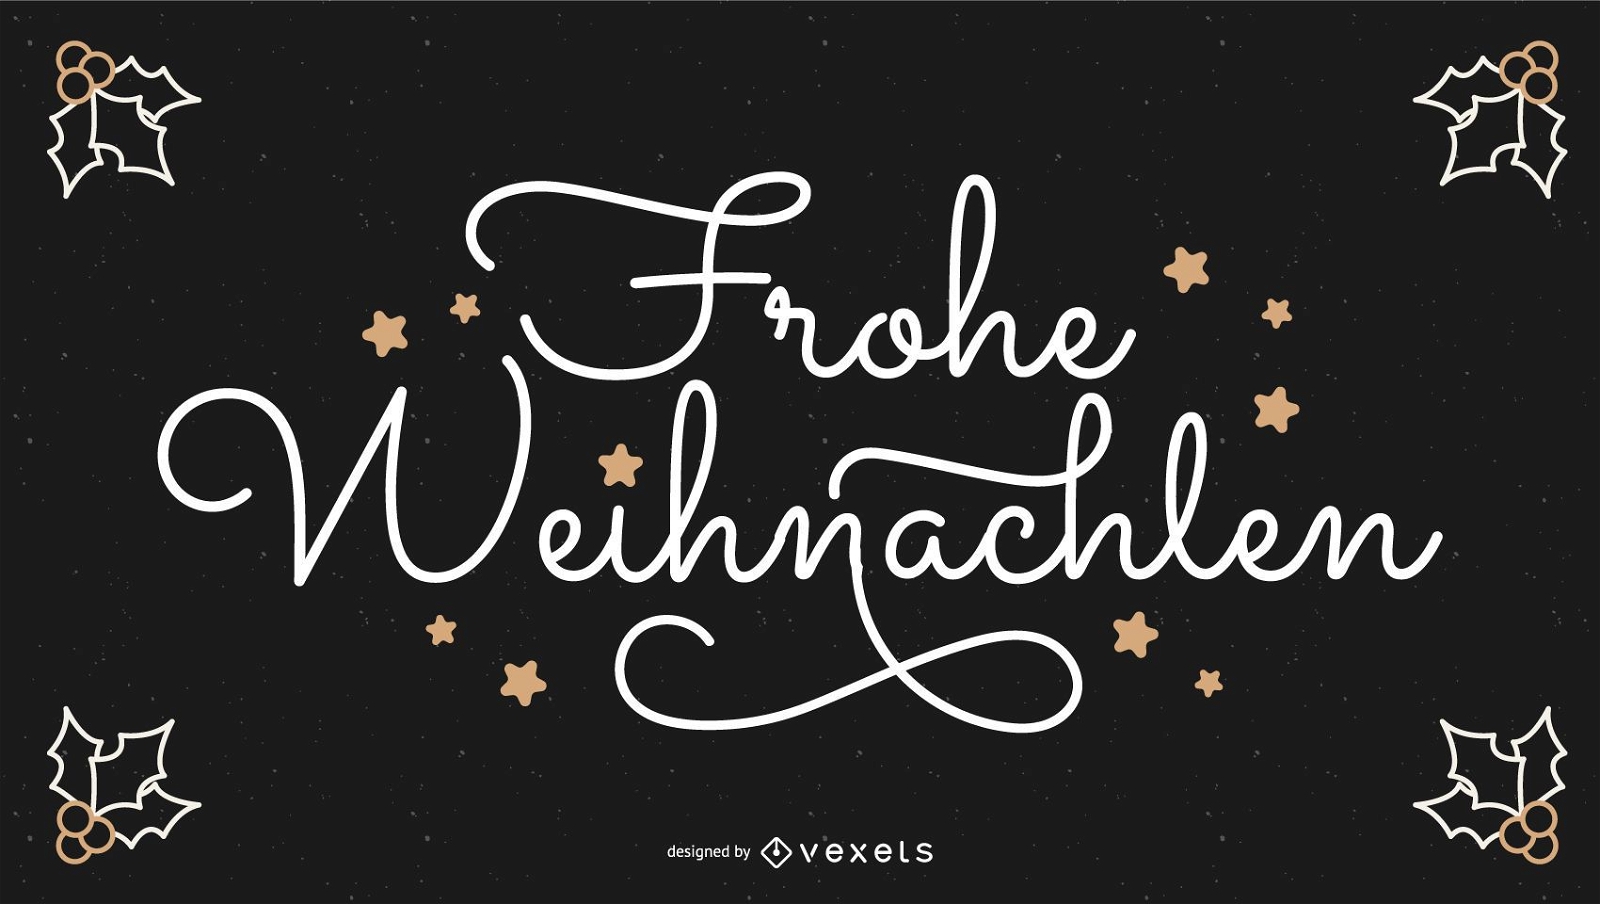 Banner de cita de Navidad alemana de Frohe Weihnachten